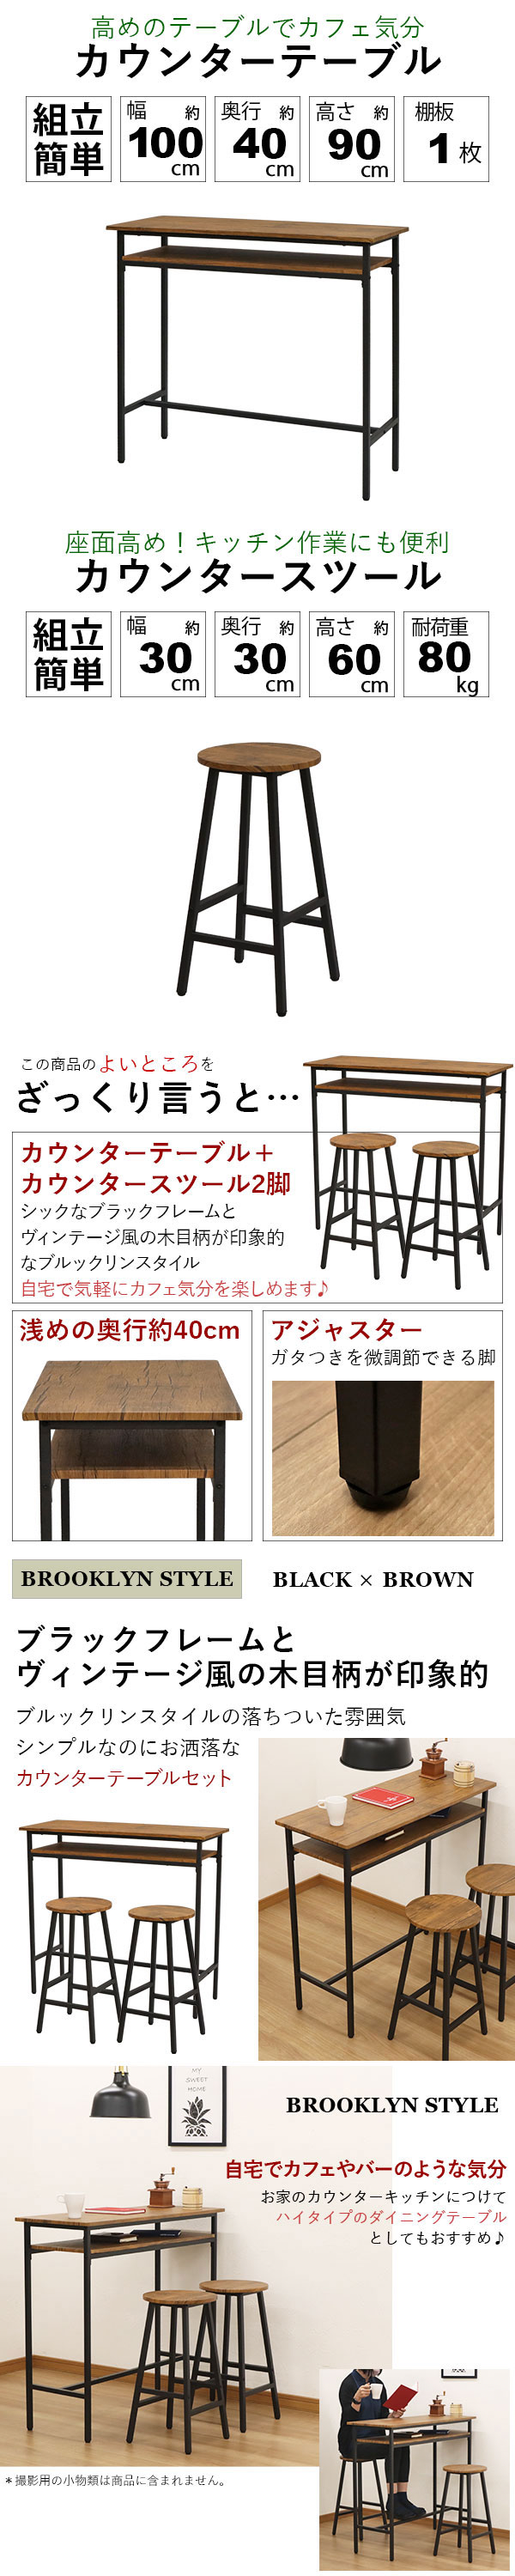 カウンターテーブル 3点セット スツール 2脚 90高 100幅 コーヒーテーブル カフェテーブル キッチンチェア バーチェア ハイチェア  カウンターチェア 机 椅子